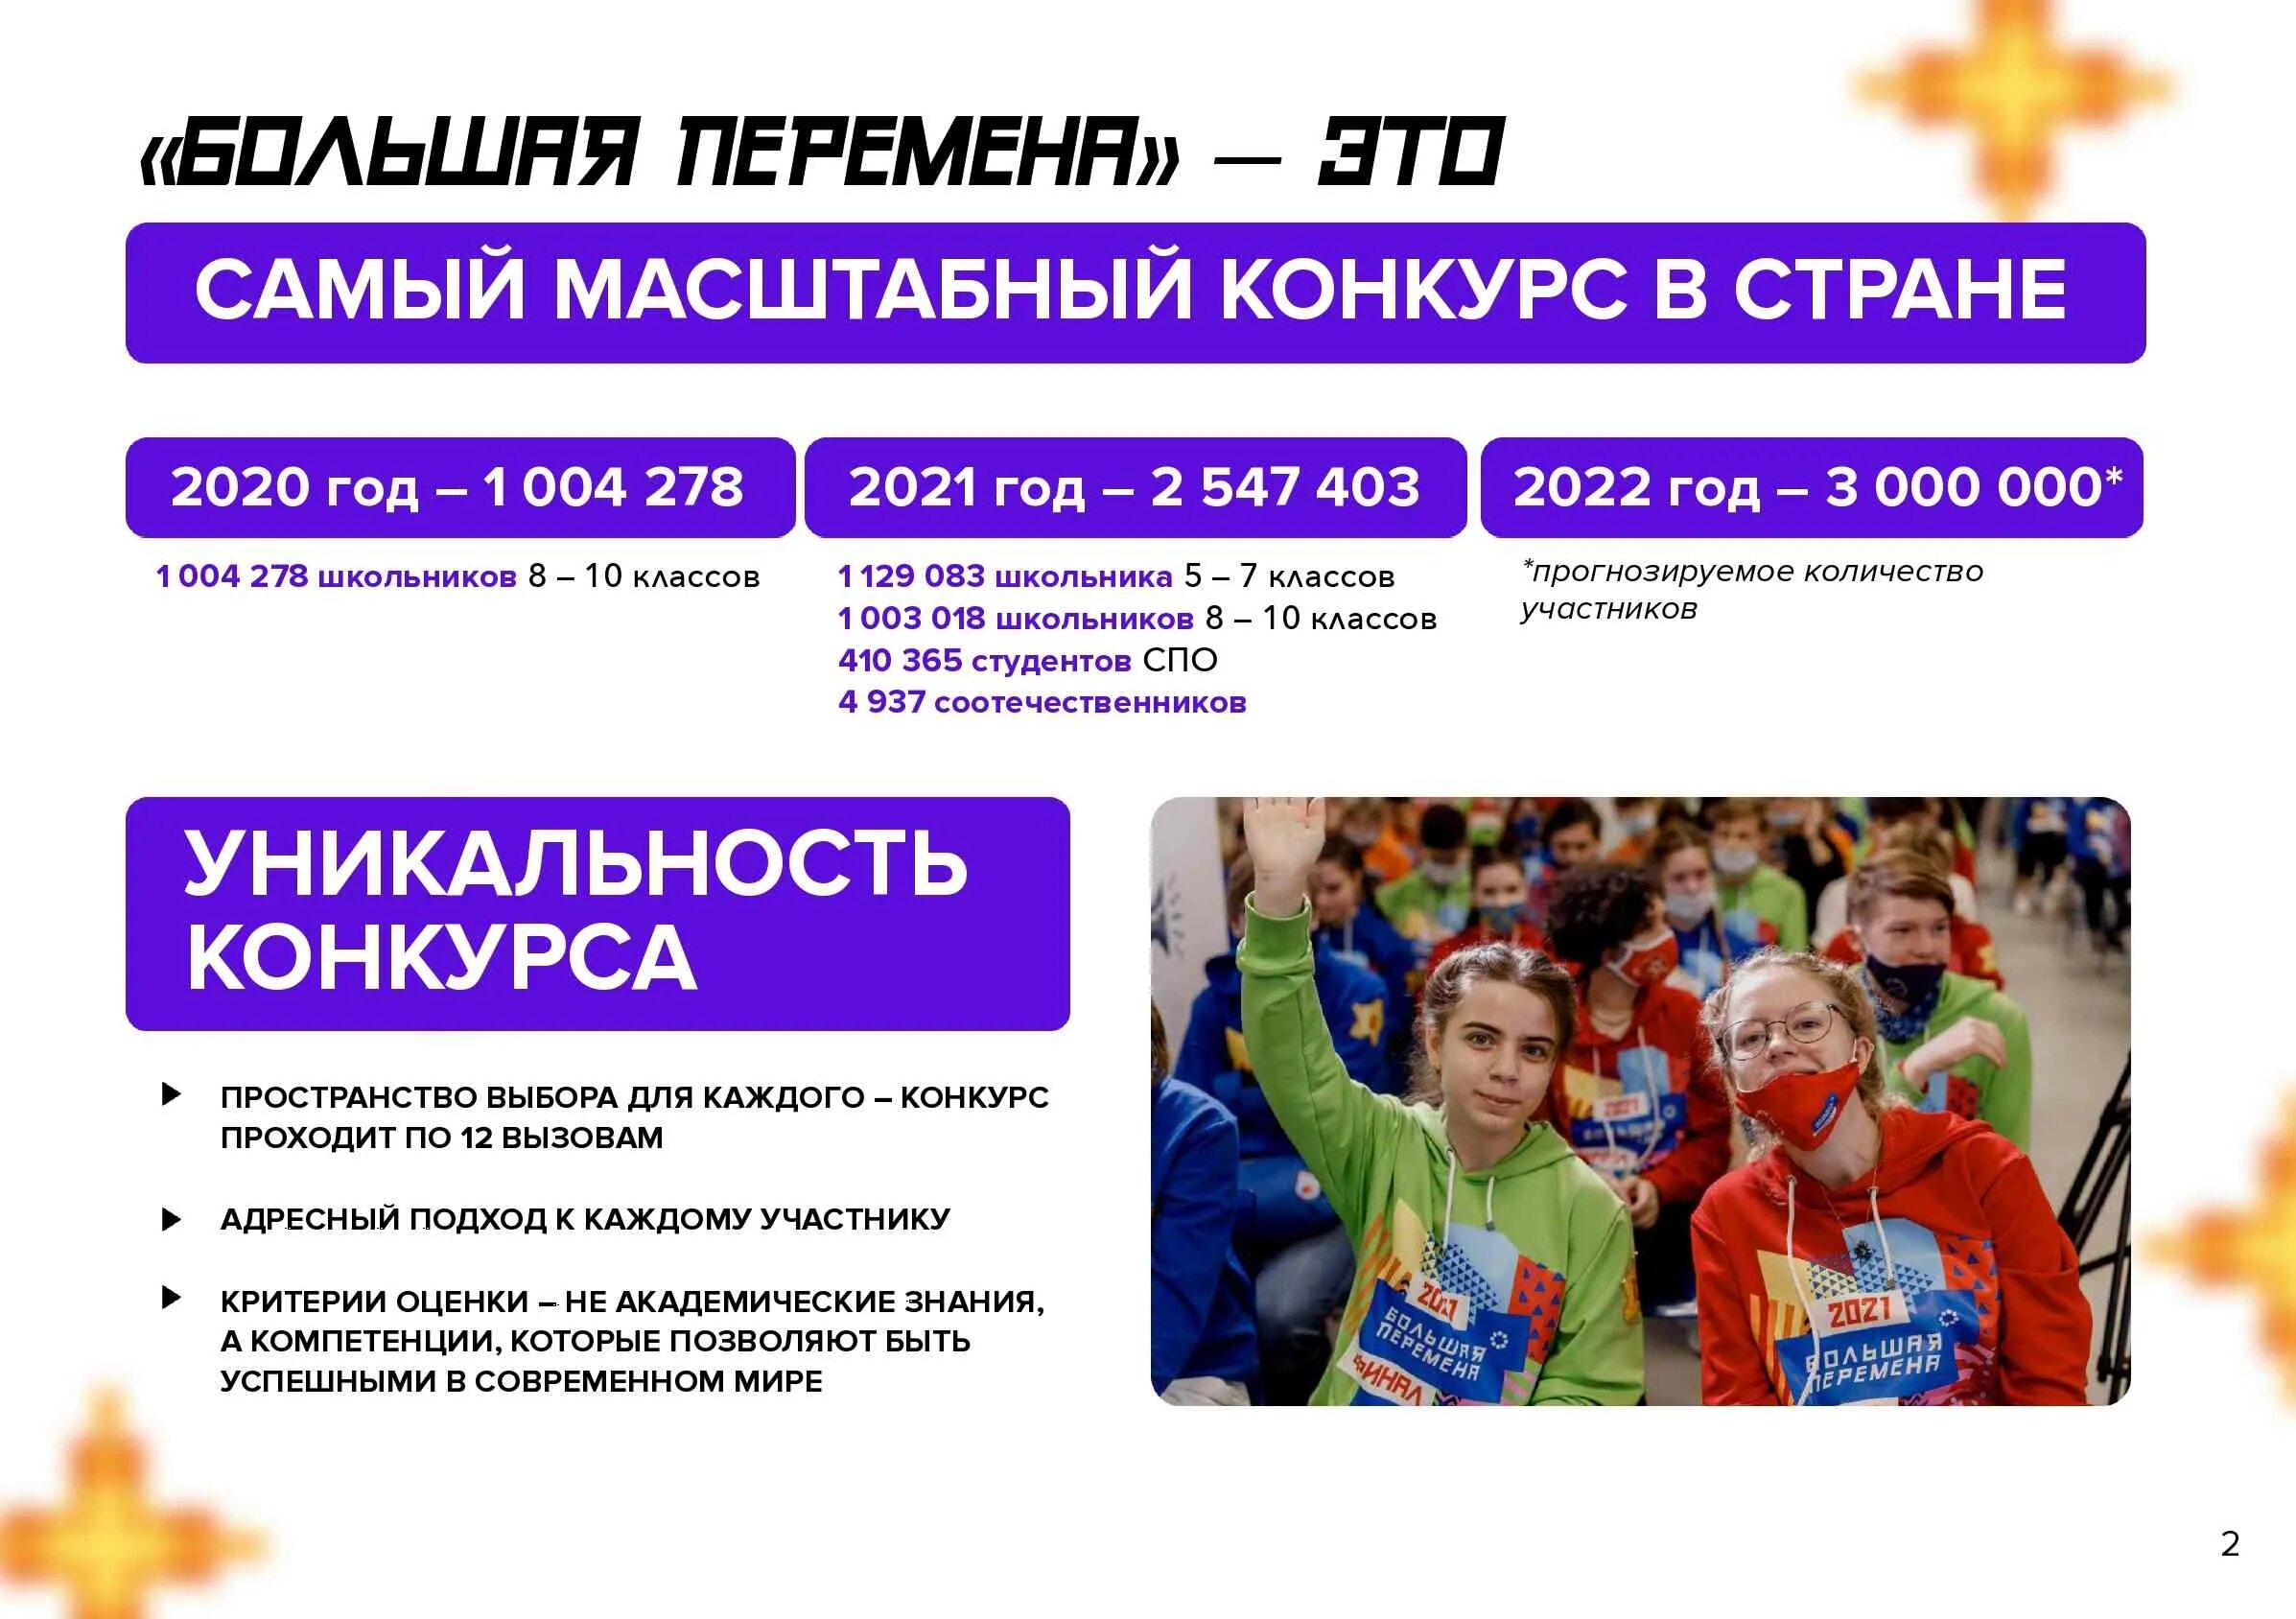 Большая перемена регистрация на конкурс. Всероссийский конкурс большая перемена 2022. Большая перемена конкурс для школьников 2022. Проект большая перемена 2022. Проект большая перемена для школьников что это такое.